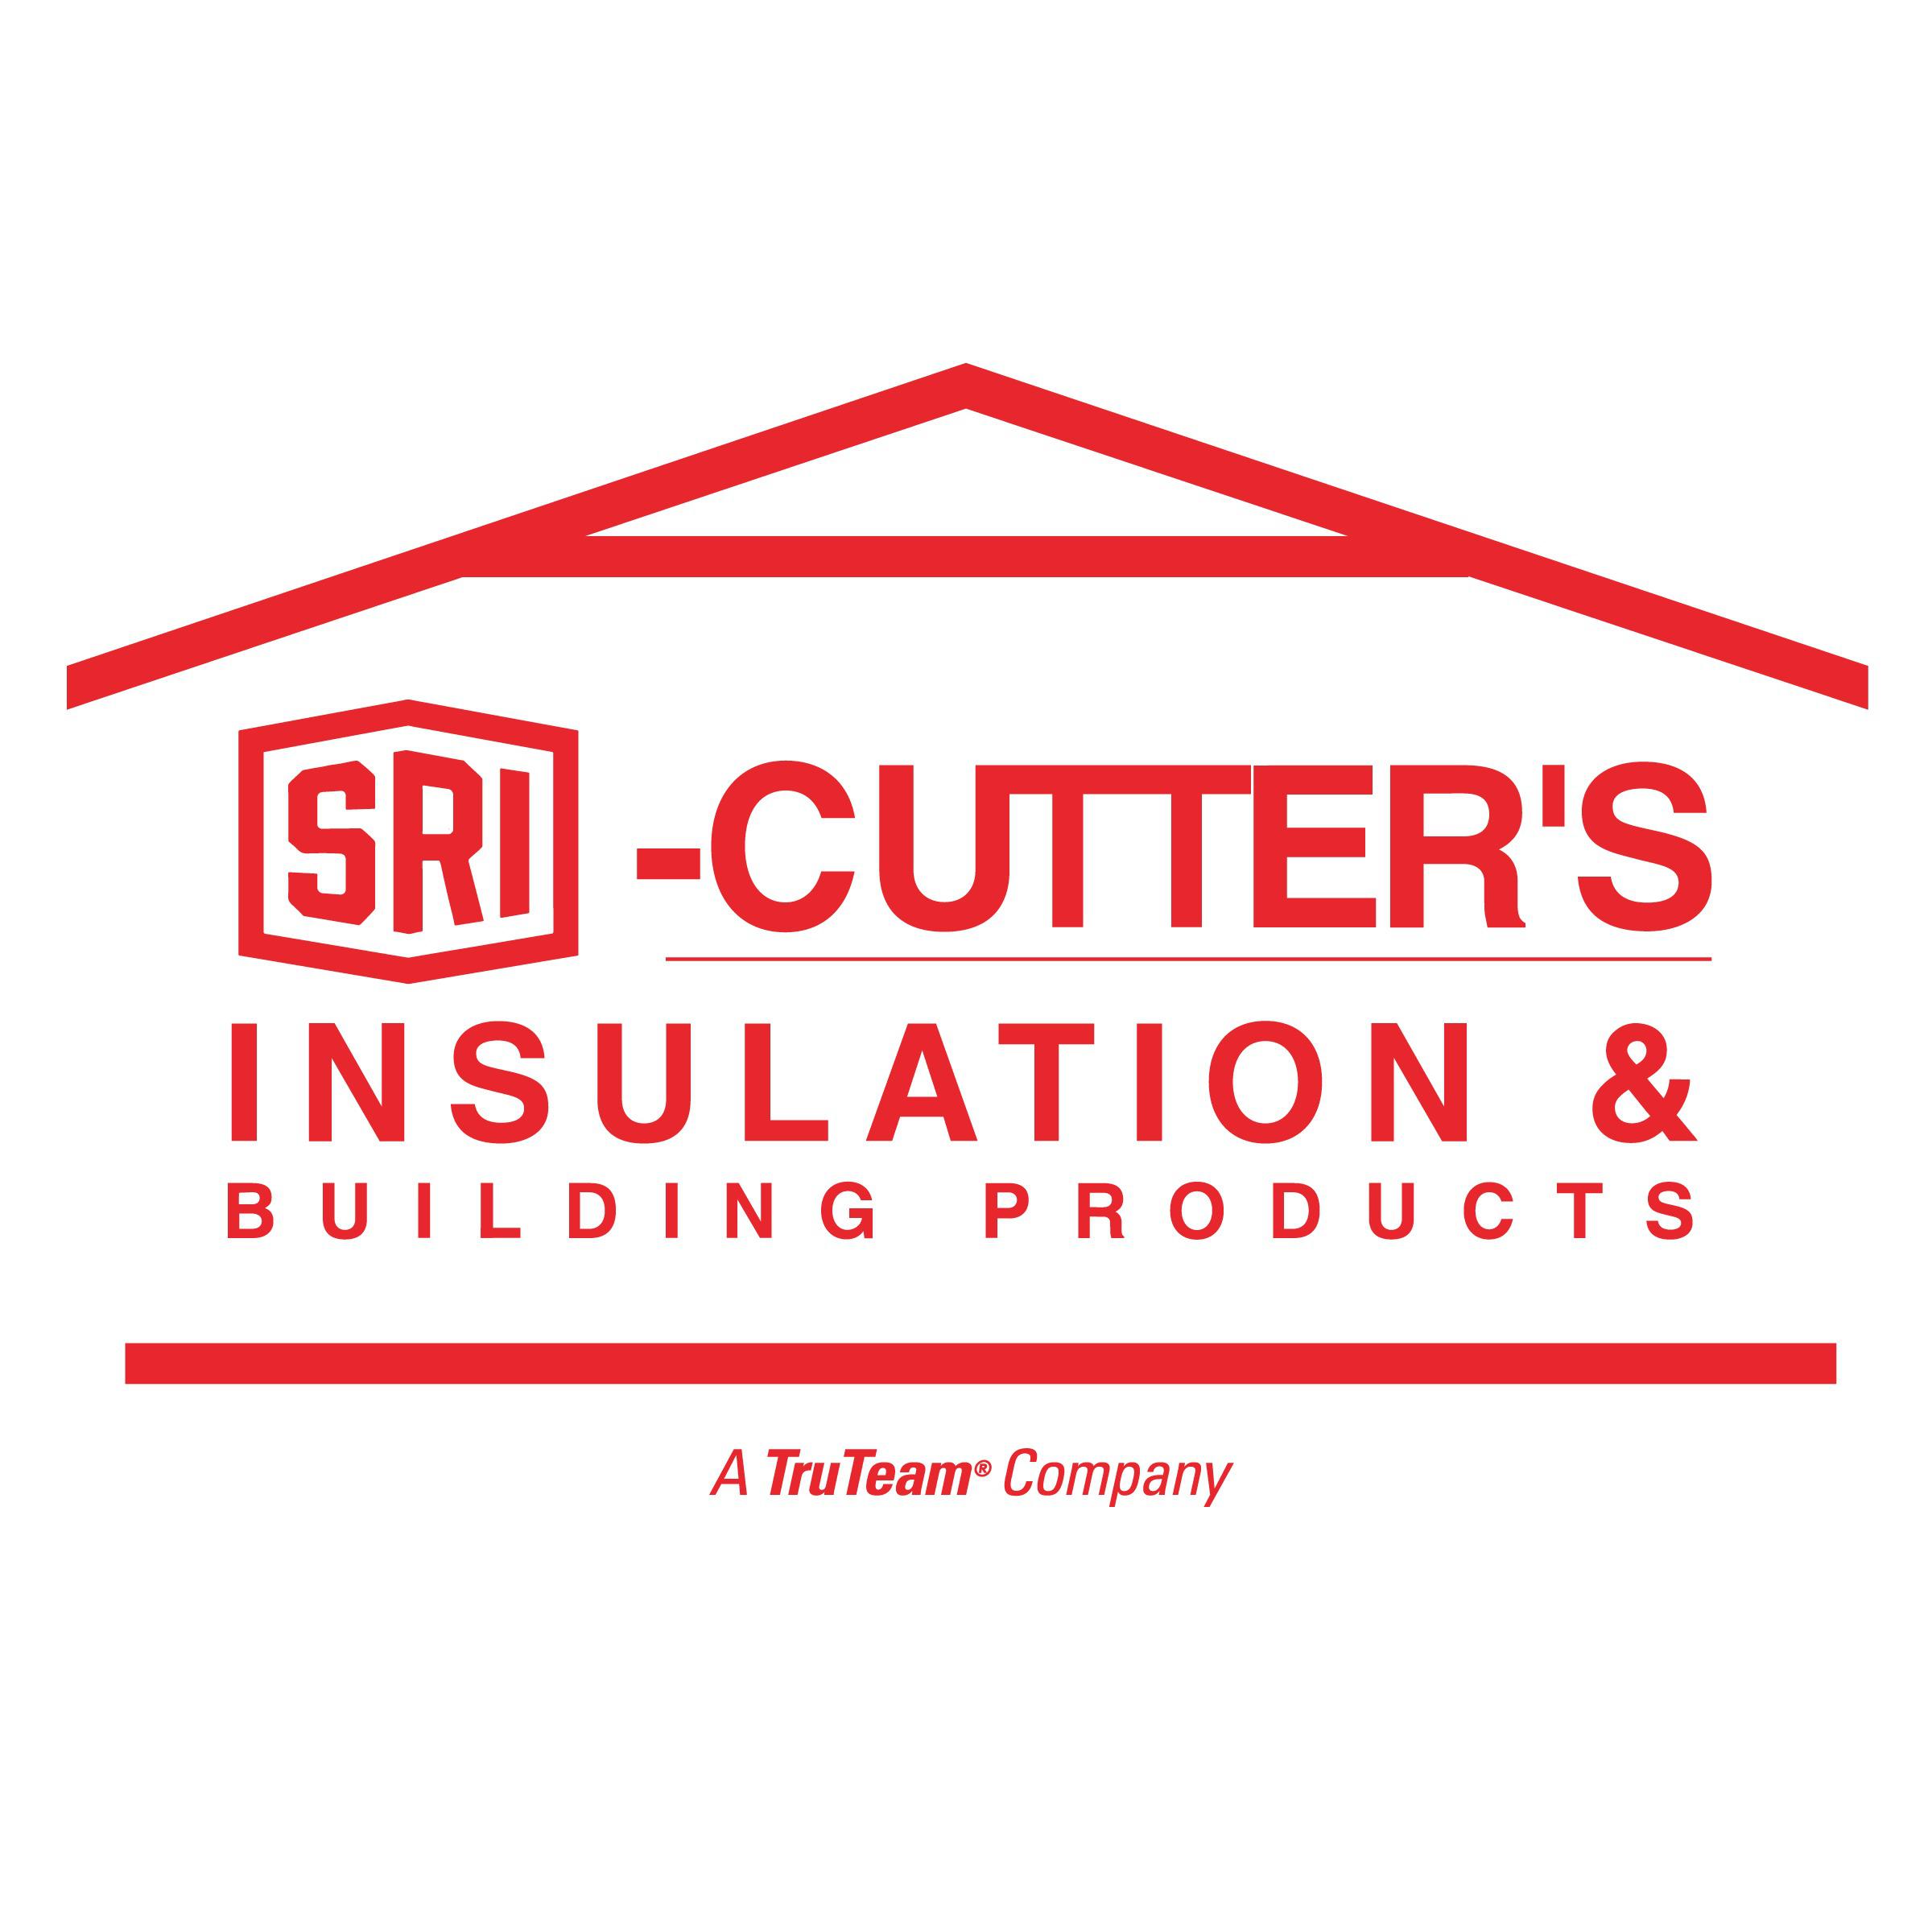 SRI Cutters